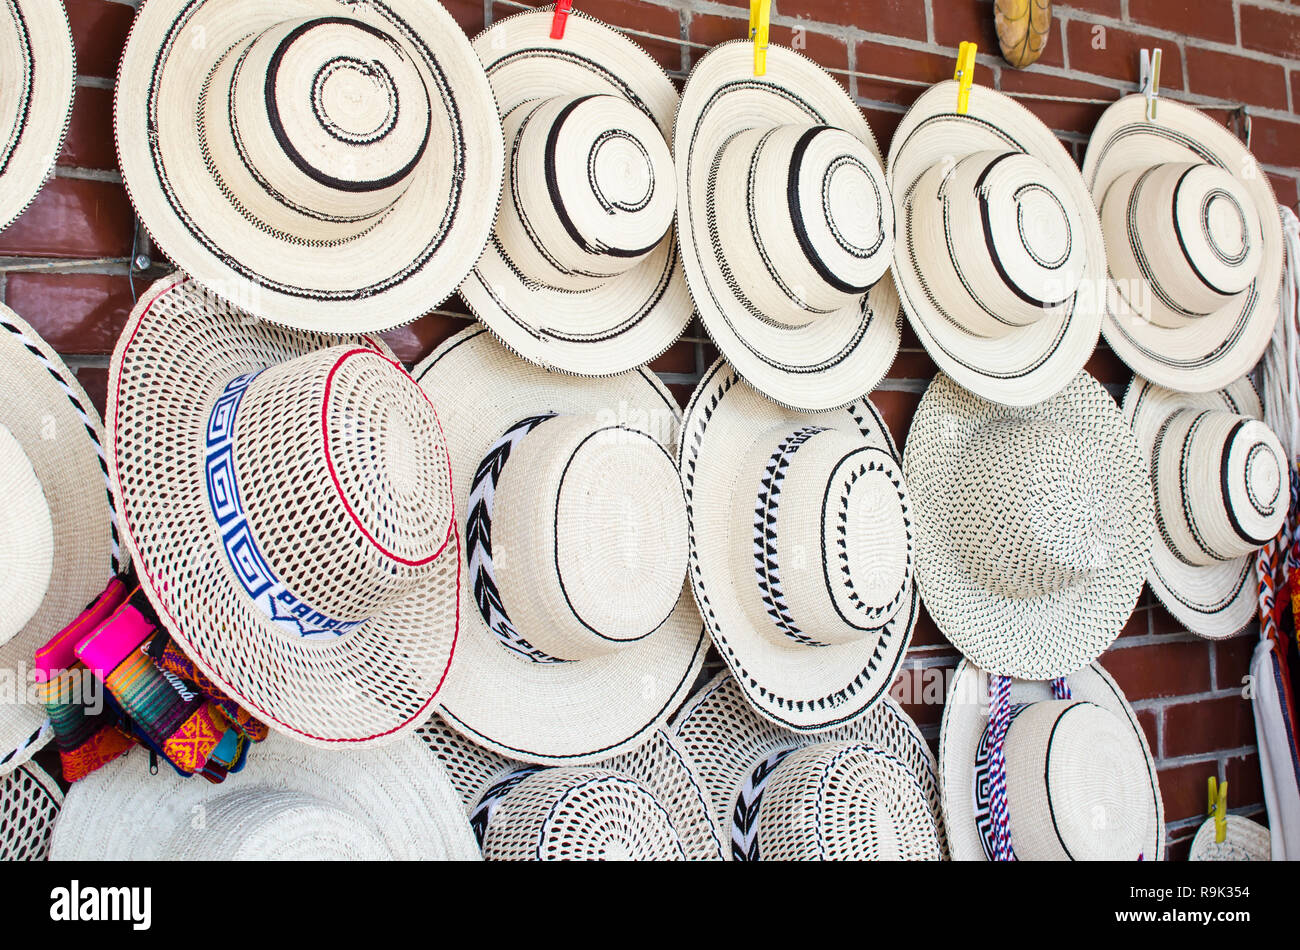 Chapeaux Panama pour la vente. Il y a une variété de chapeaux traditionnels panaméens, qui diffèrent de la bien connue des panamas (de l'Équateur) Banque D'Images